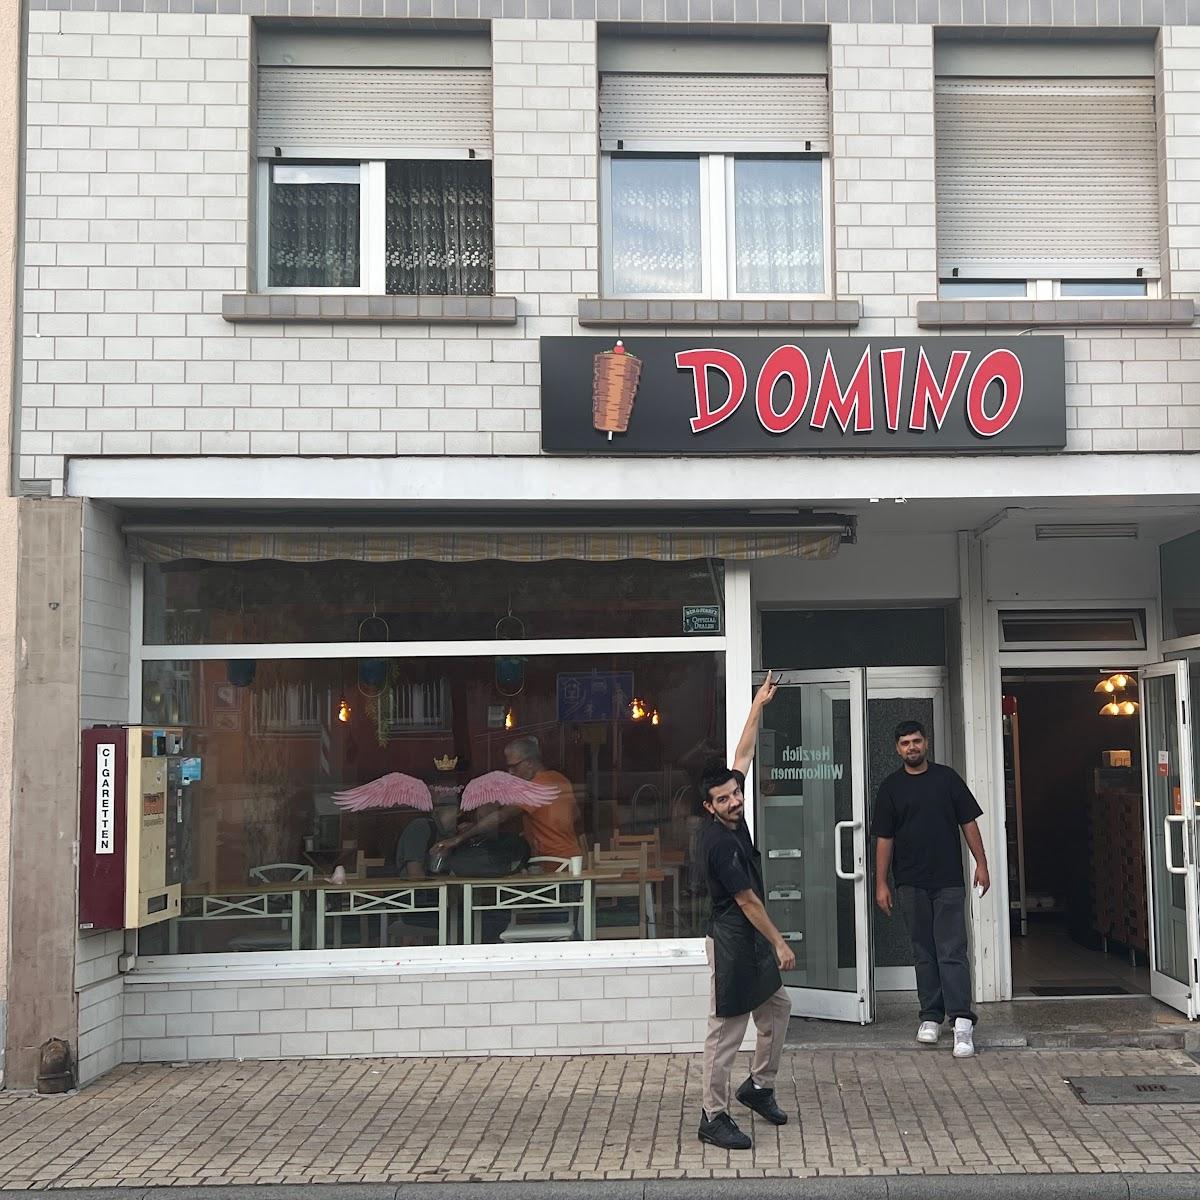 Restaurant "DOMINO" in Weißenthurm